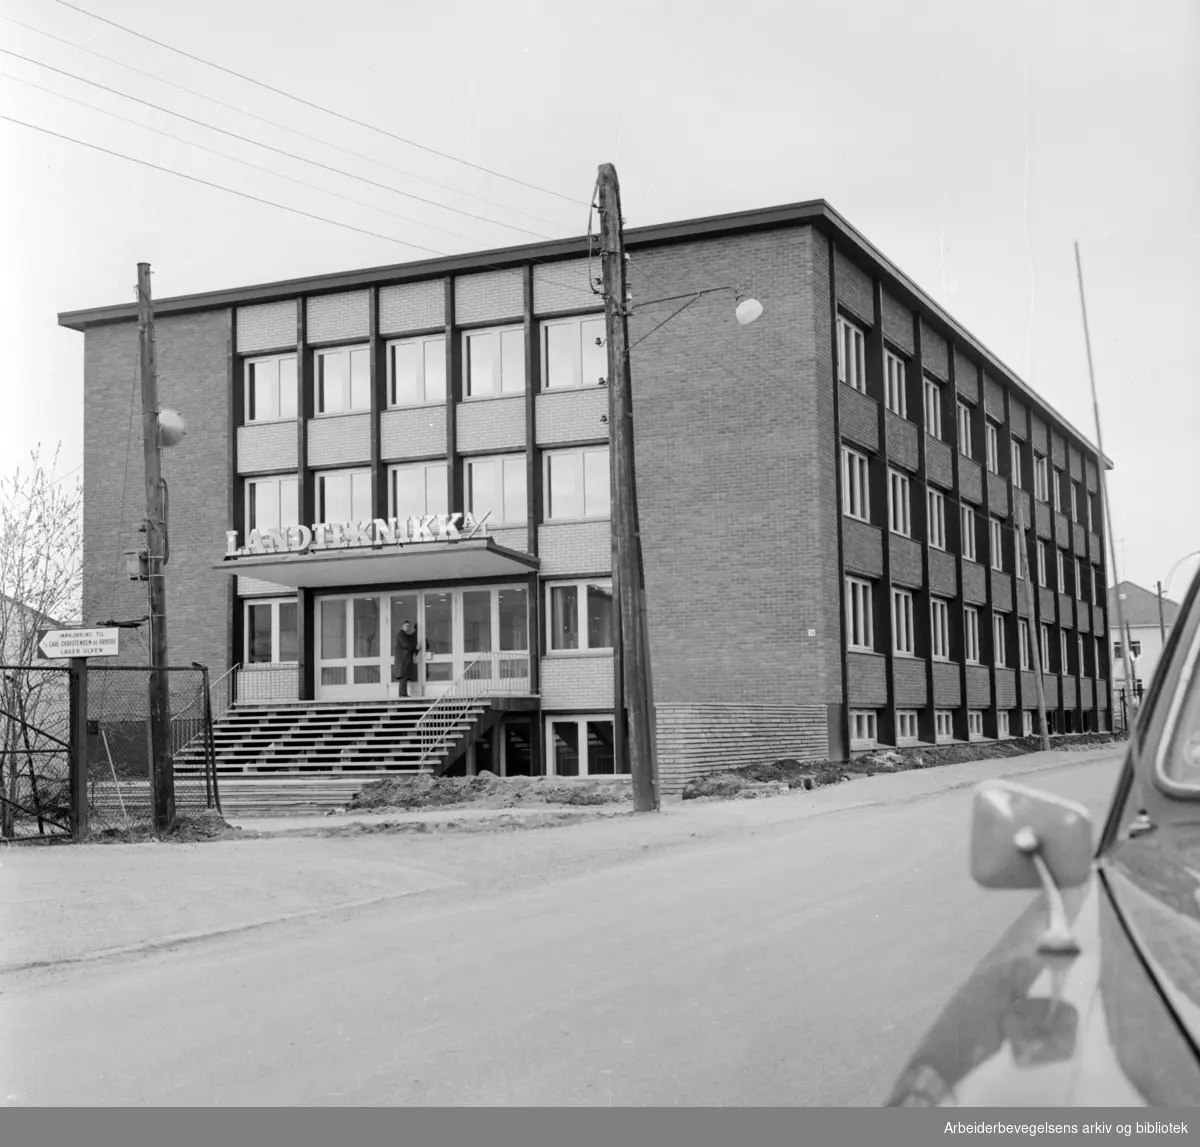 Ulven Landteknikk A/S. Her produseres og omsettes teknisk utstyr, driftsmidler og rekvisita for jordbrukets foredlings og omsetningsvirksomhet. April 1965